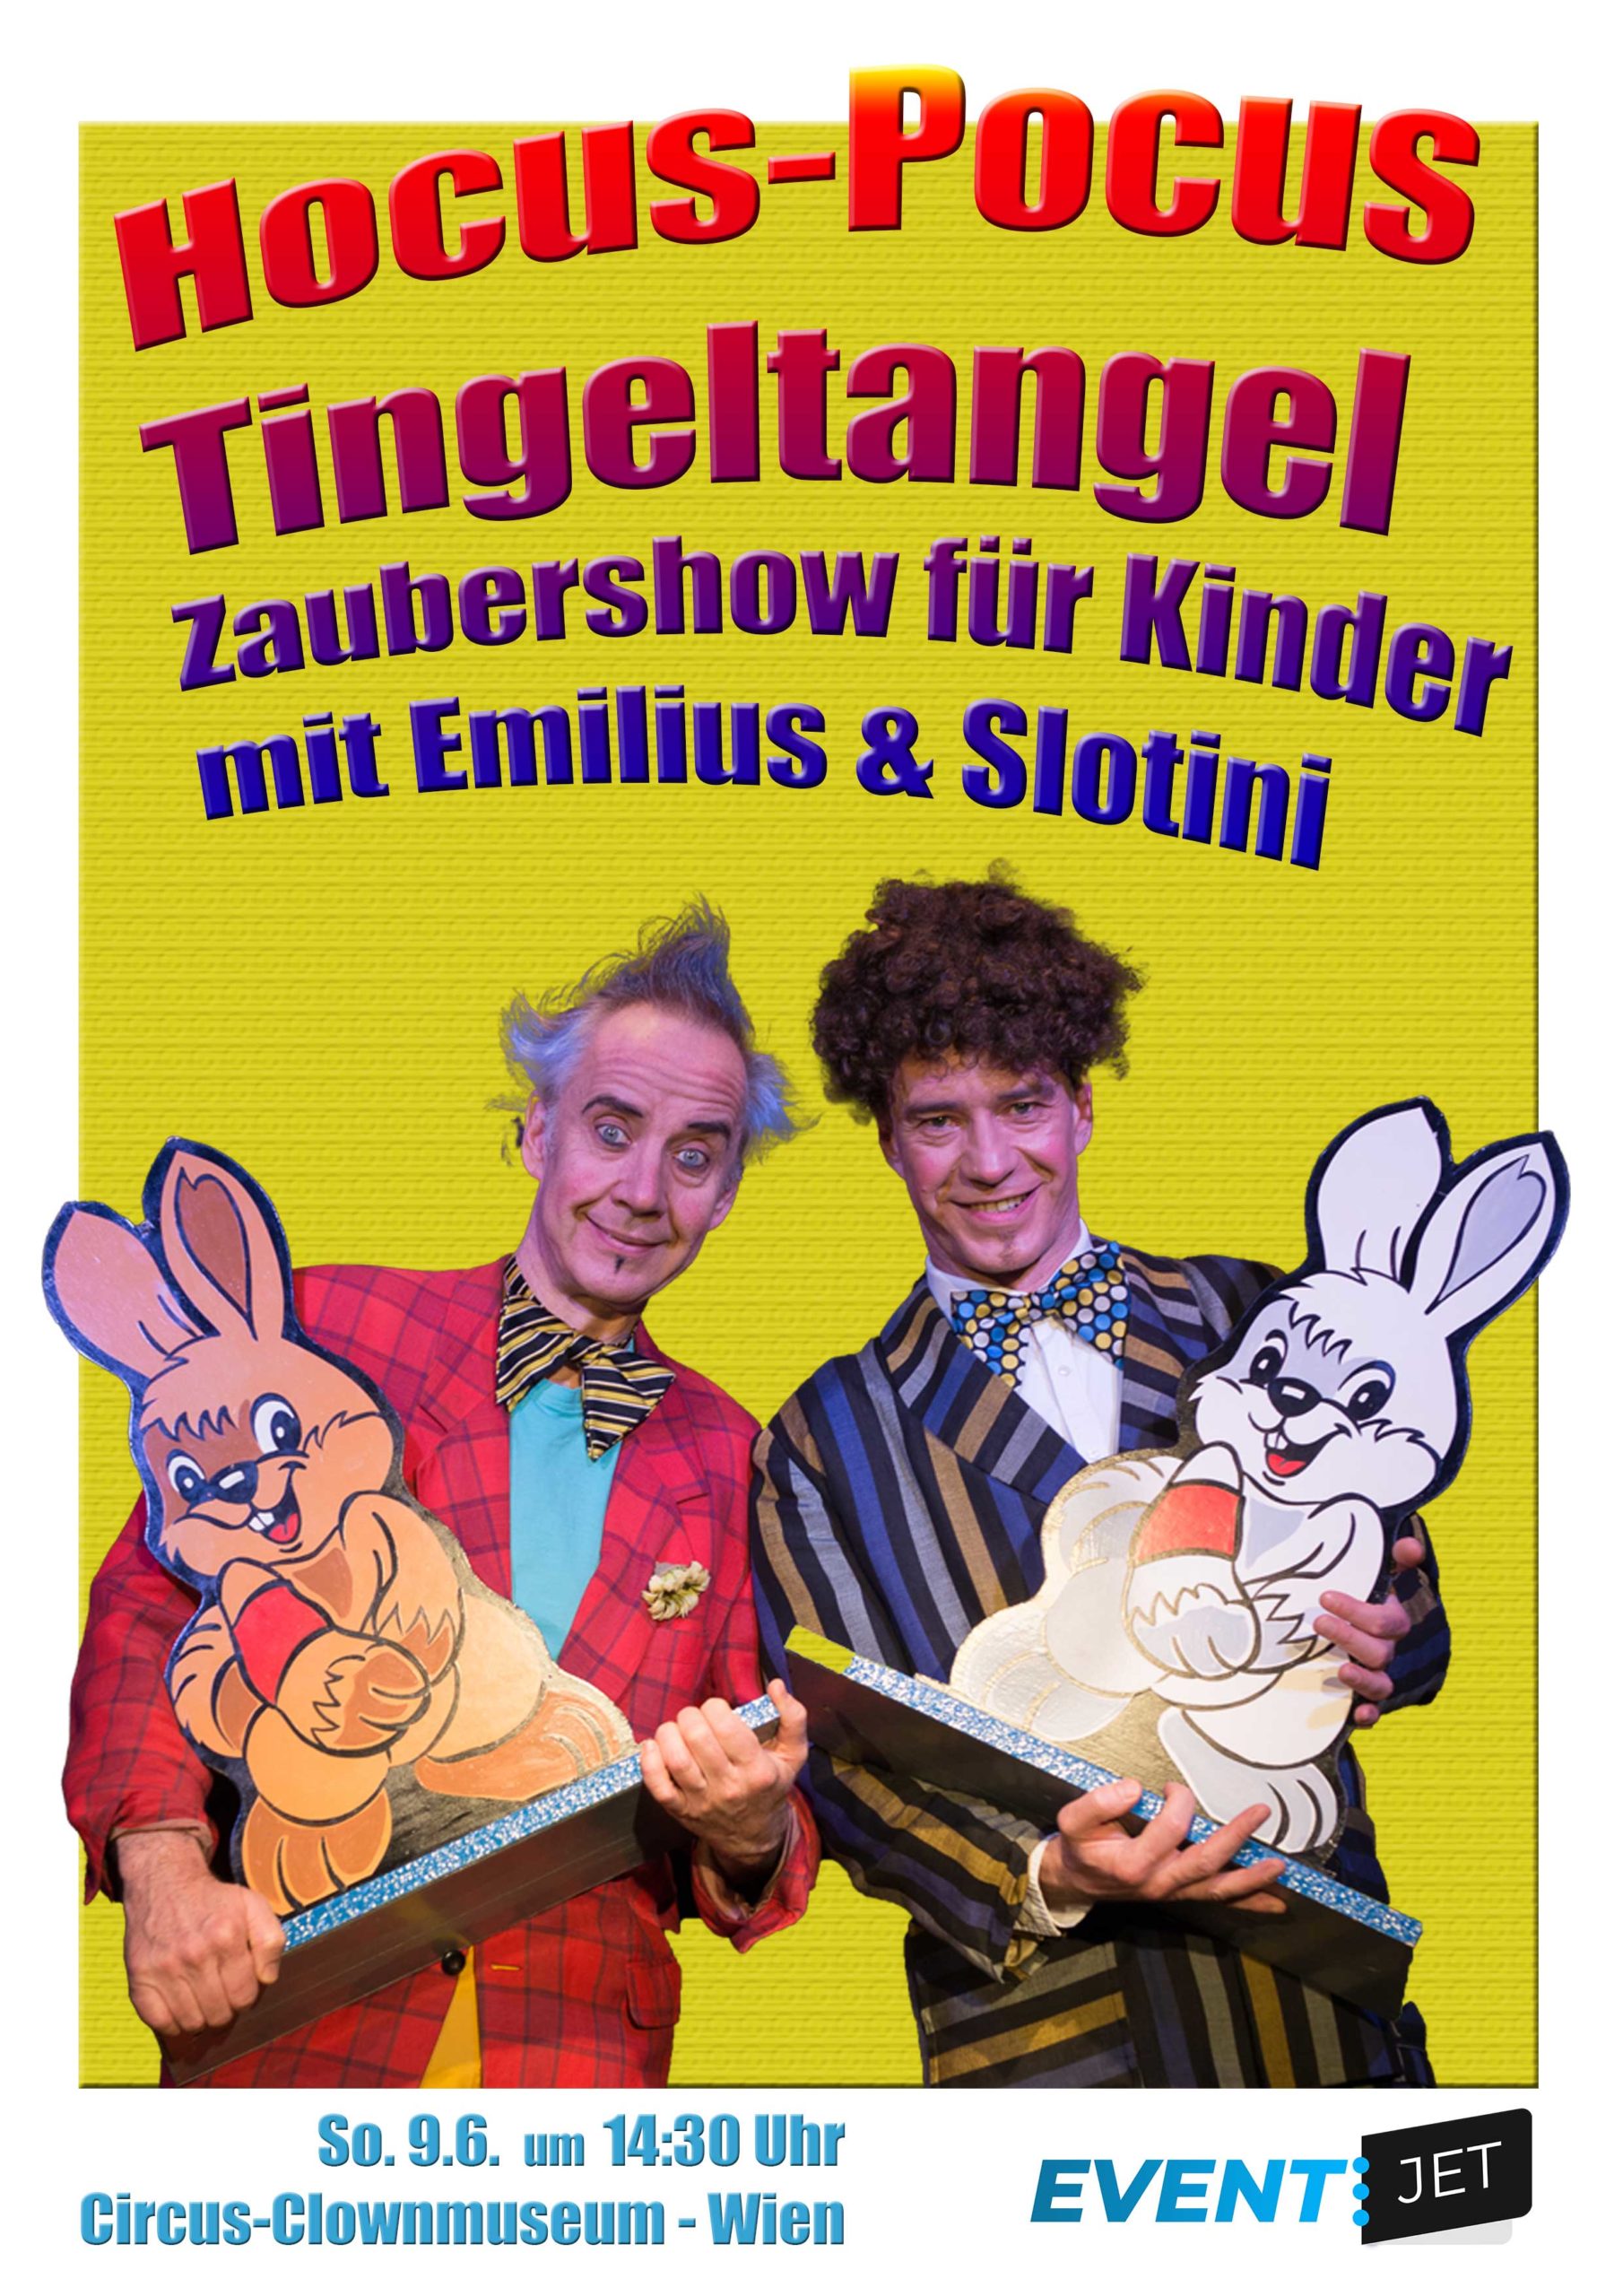 Hocus Pocus Tingeltangel - Zaubershow für Kinder